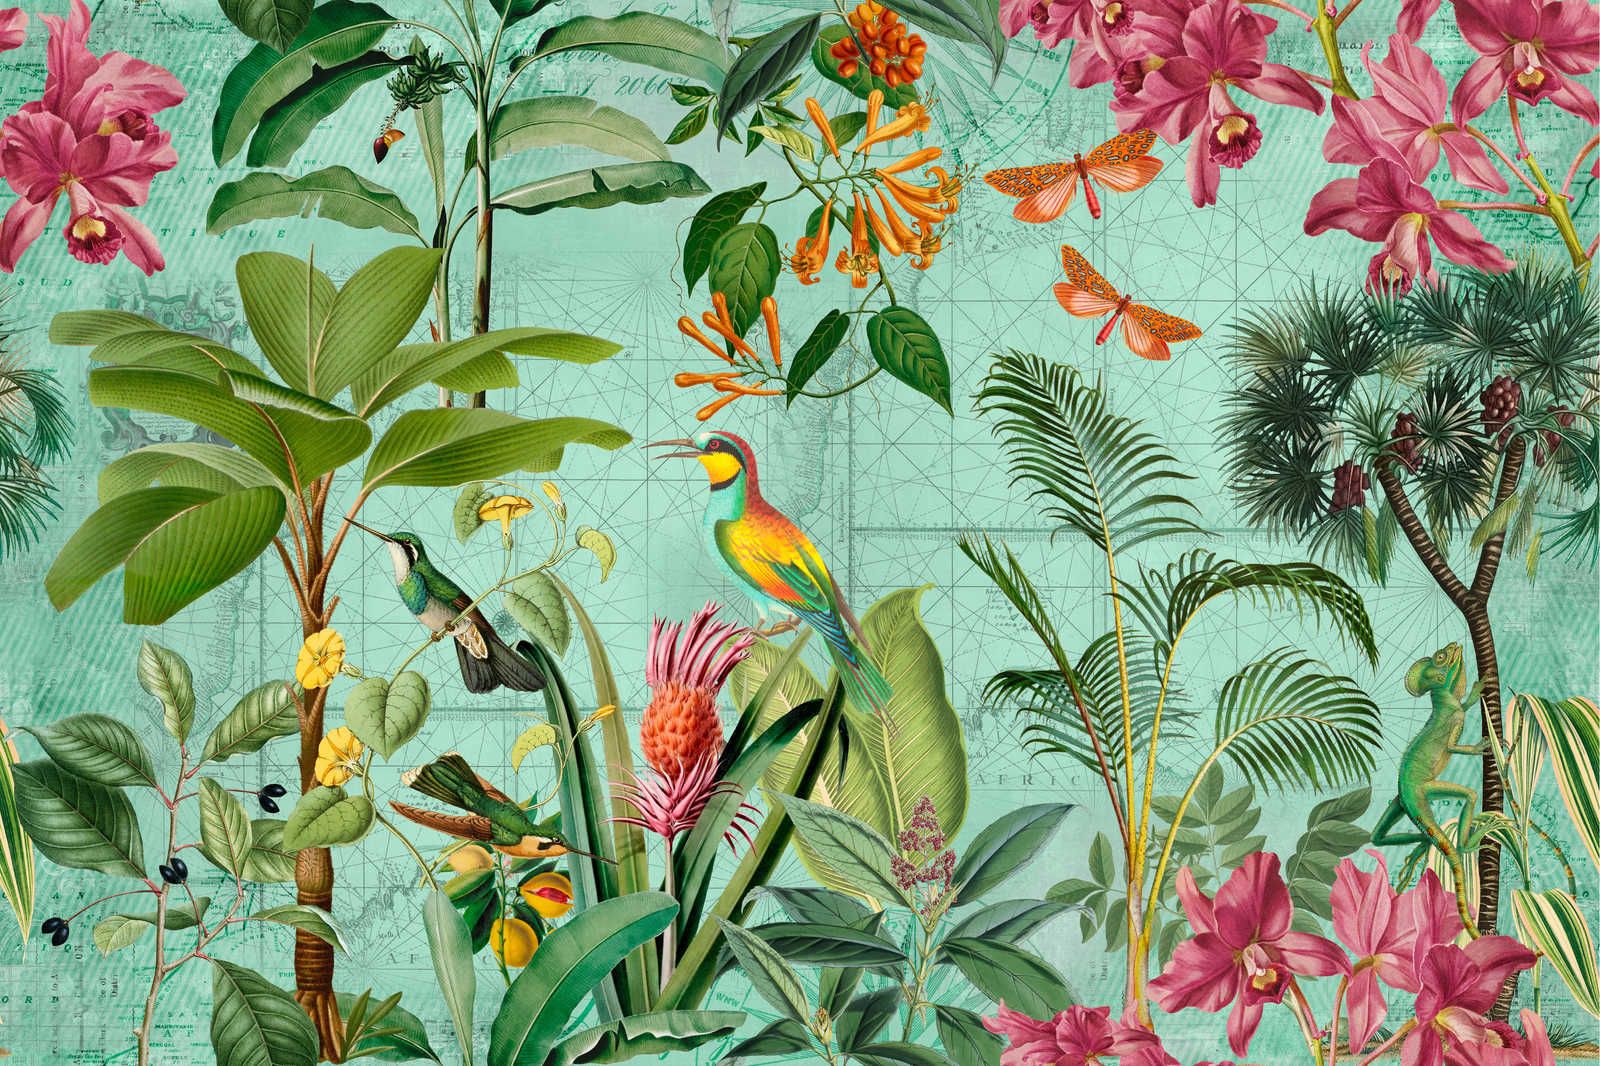             Toile jungle colorée avec arbres, fleurs & animaux - 0,90 m x 0,60 m
        